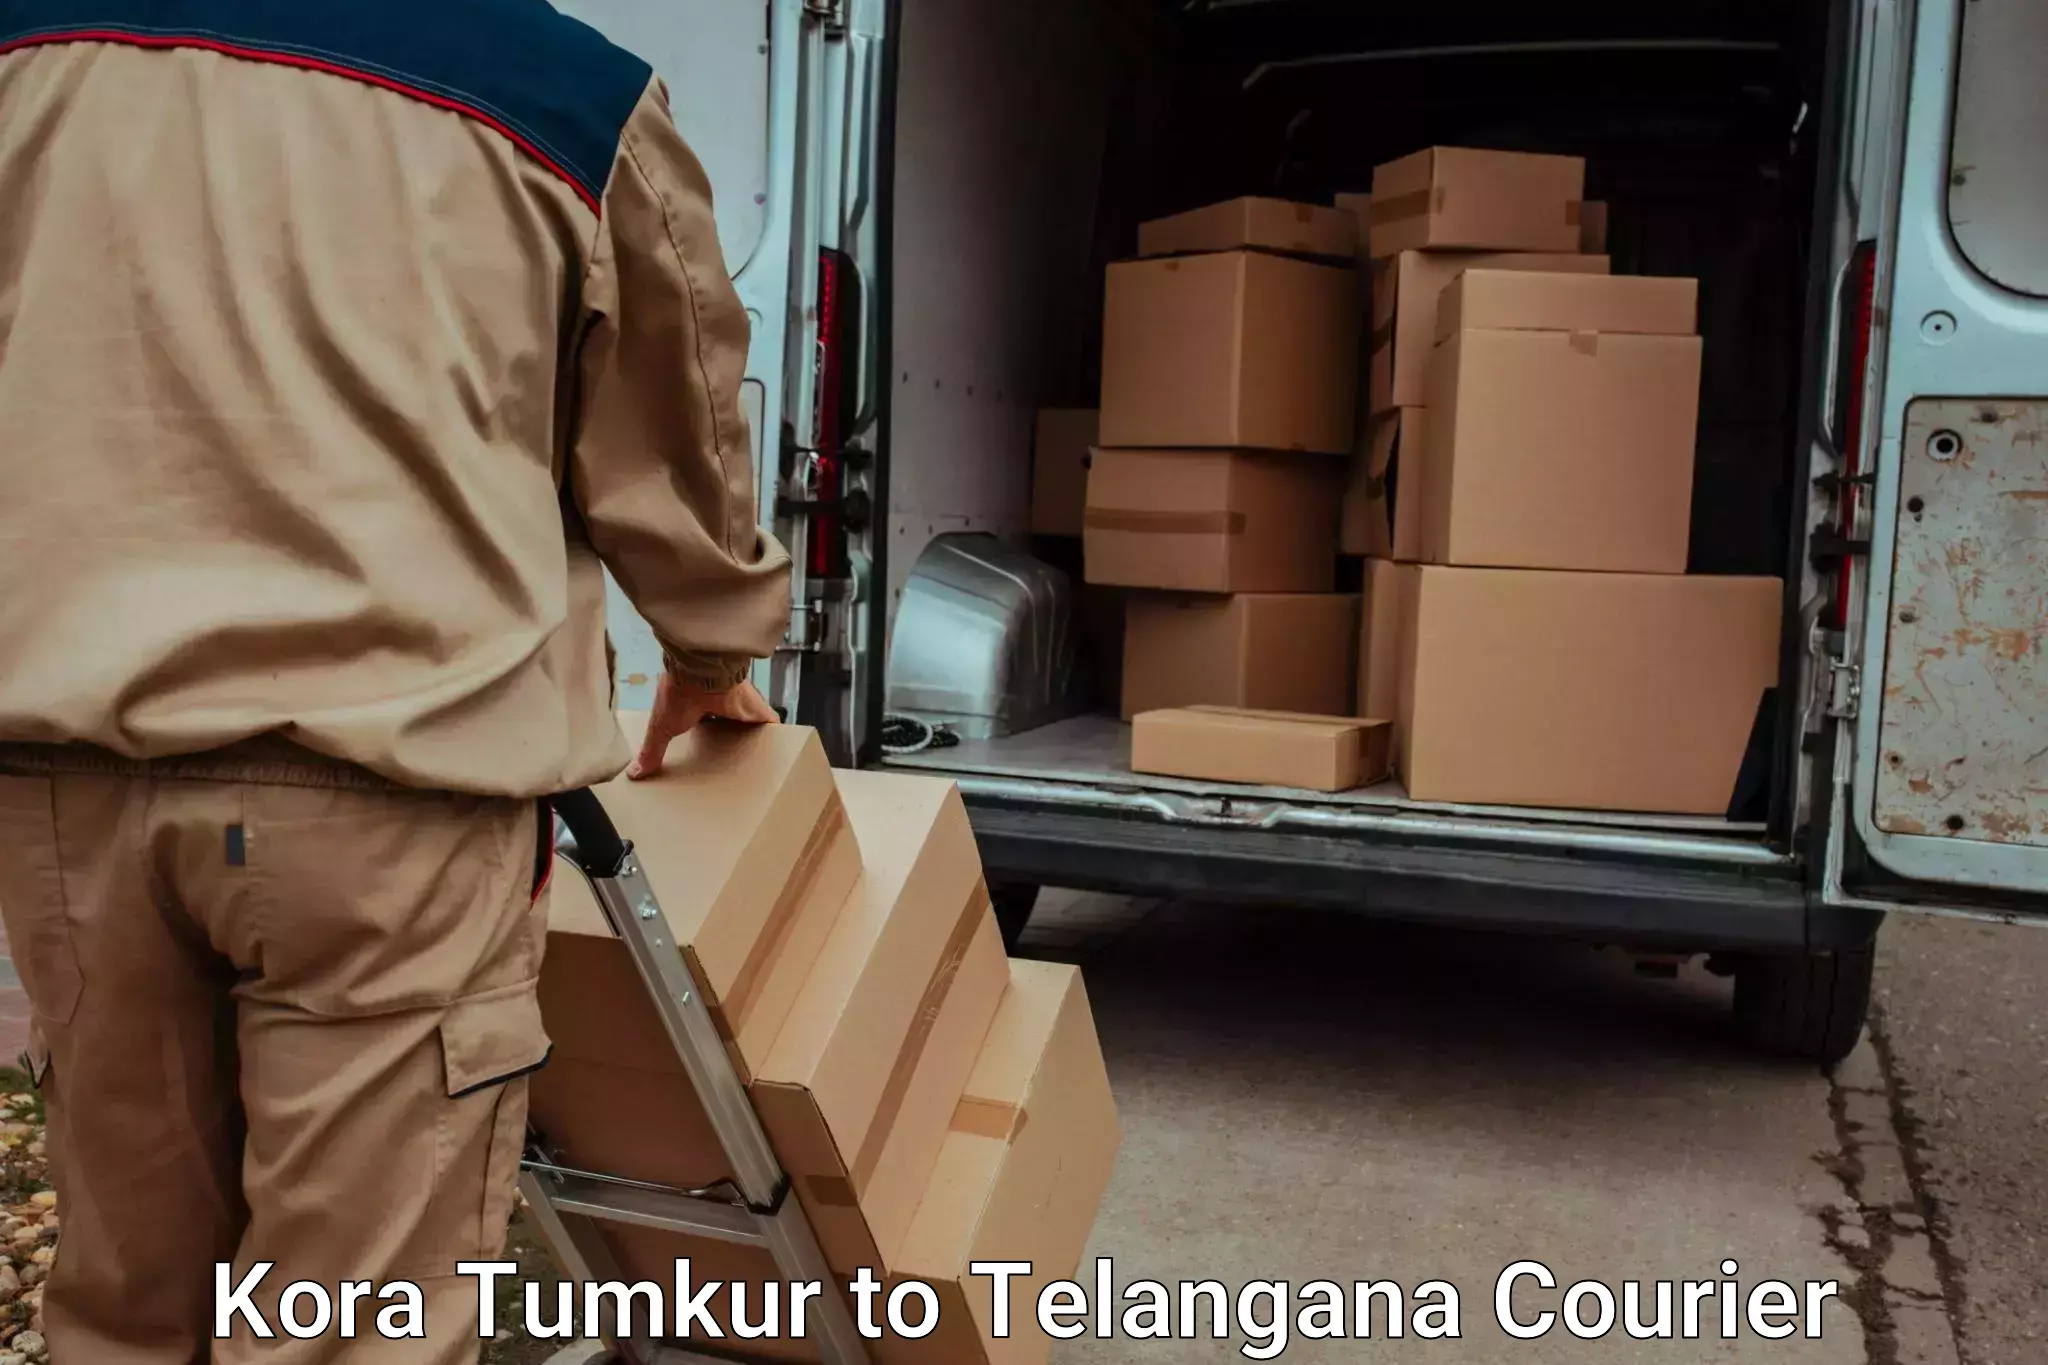 Furniture moving and handling Kora Tumkur to Bhadrachalam